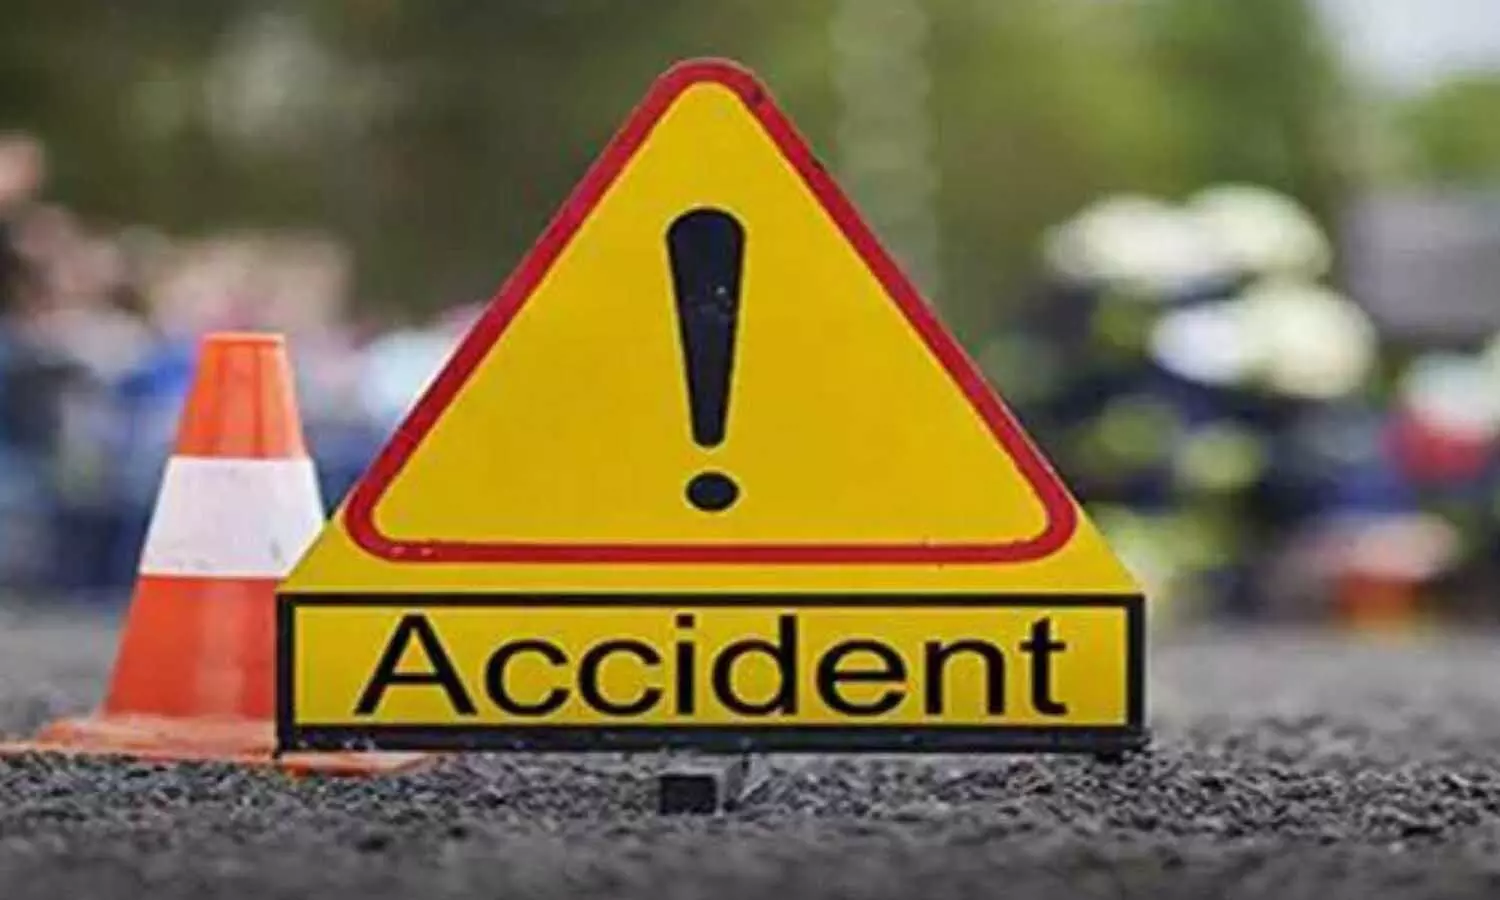 UP Accident News: यूपी के जालौन और बदायूं में भीषण सड़क हादसा, दो की मौत, दो घायल